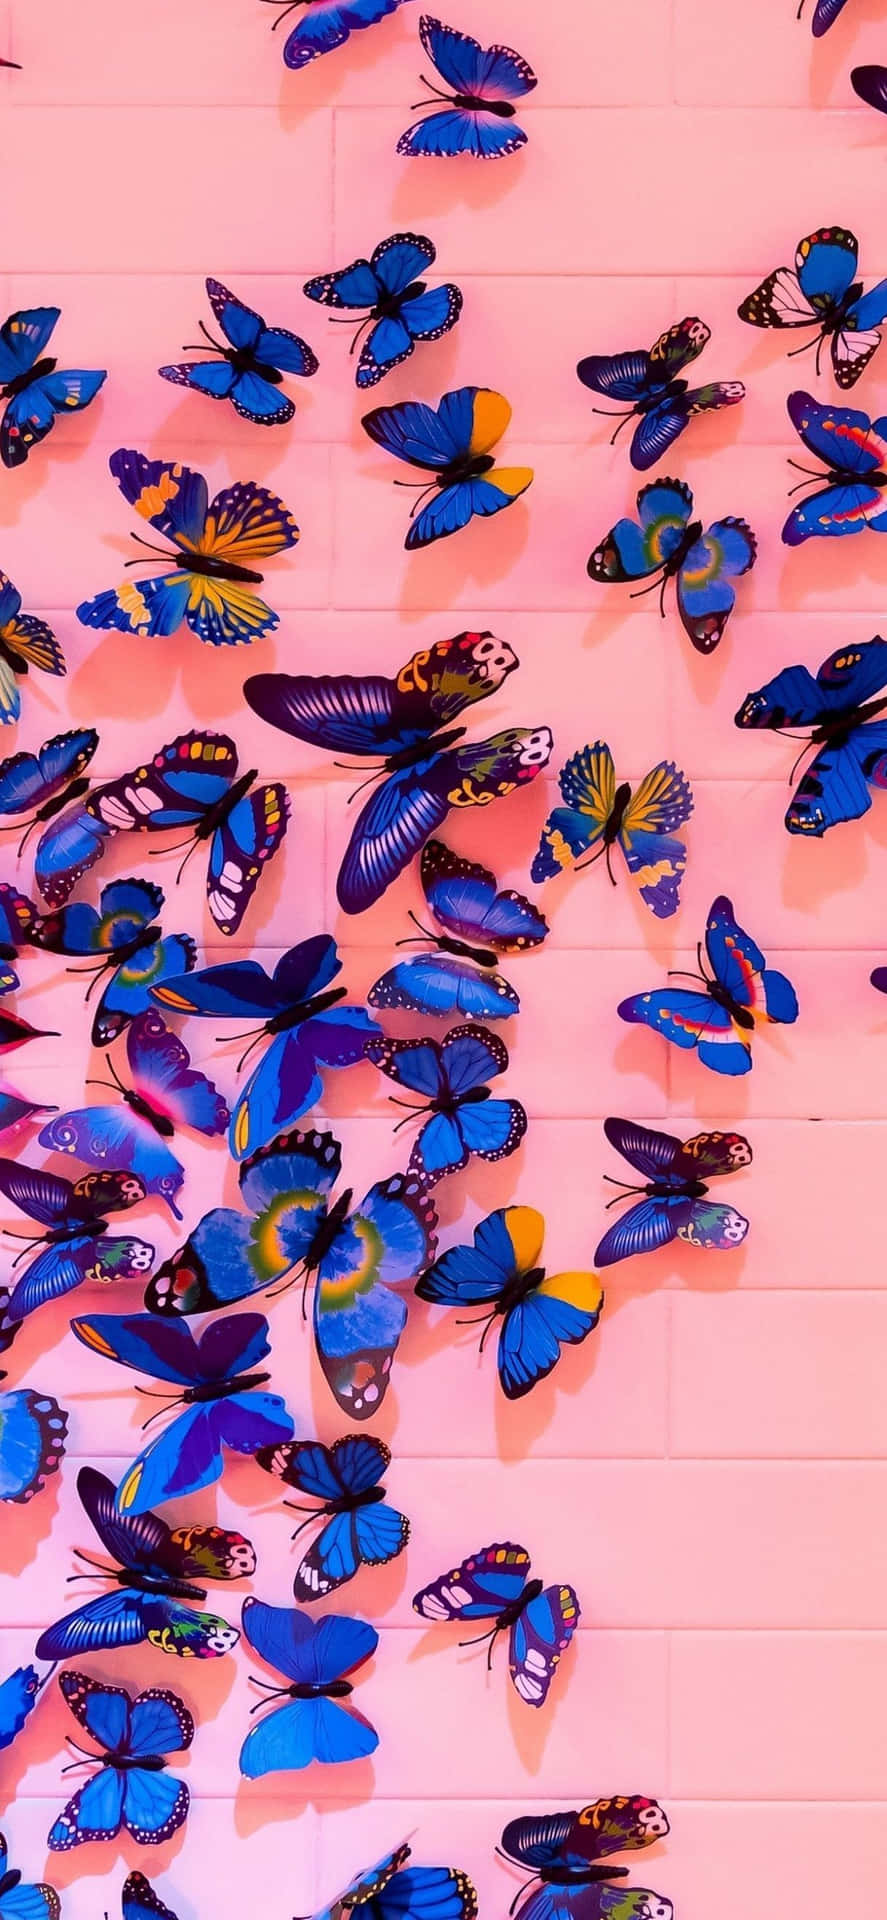 Einemauer Voller Schmetterlinge An Einer Rosafarbenen Wand. Wallpaper